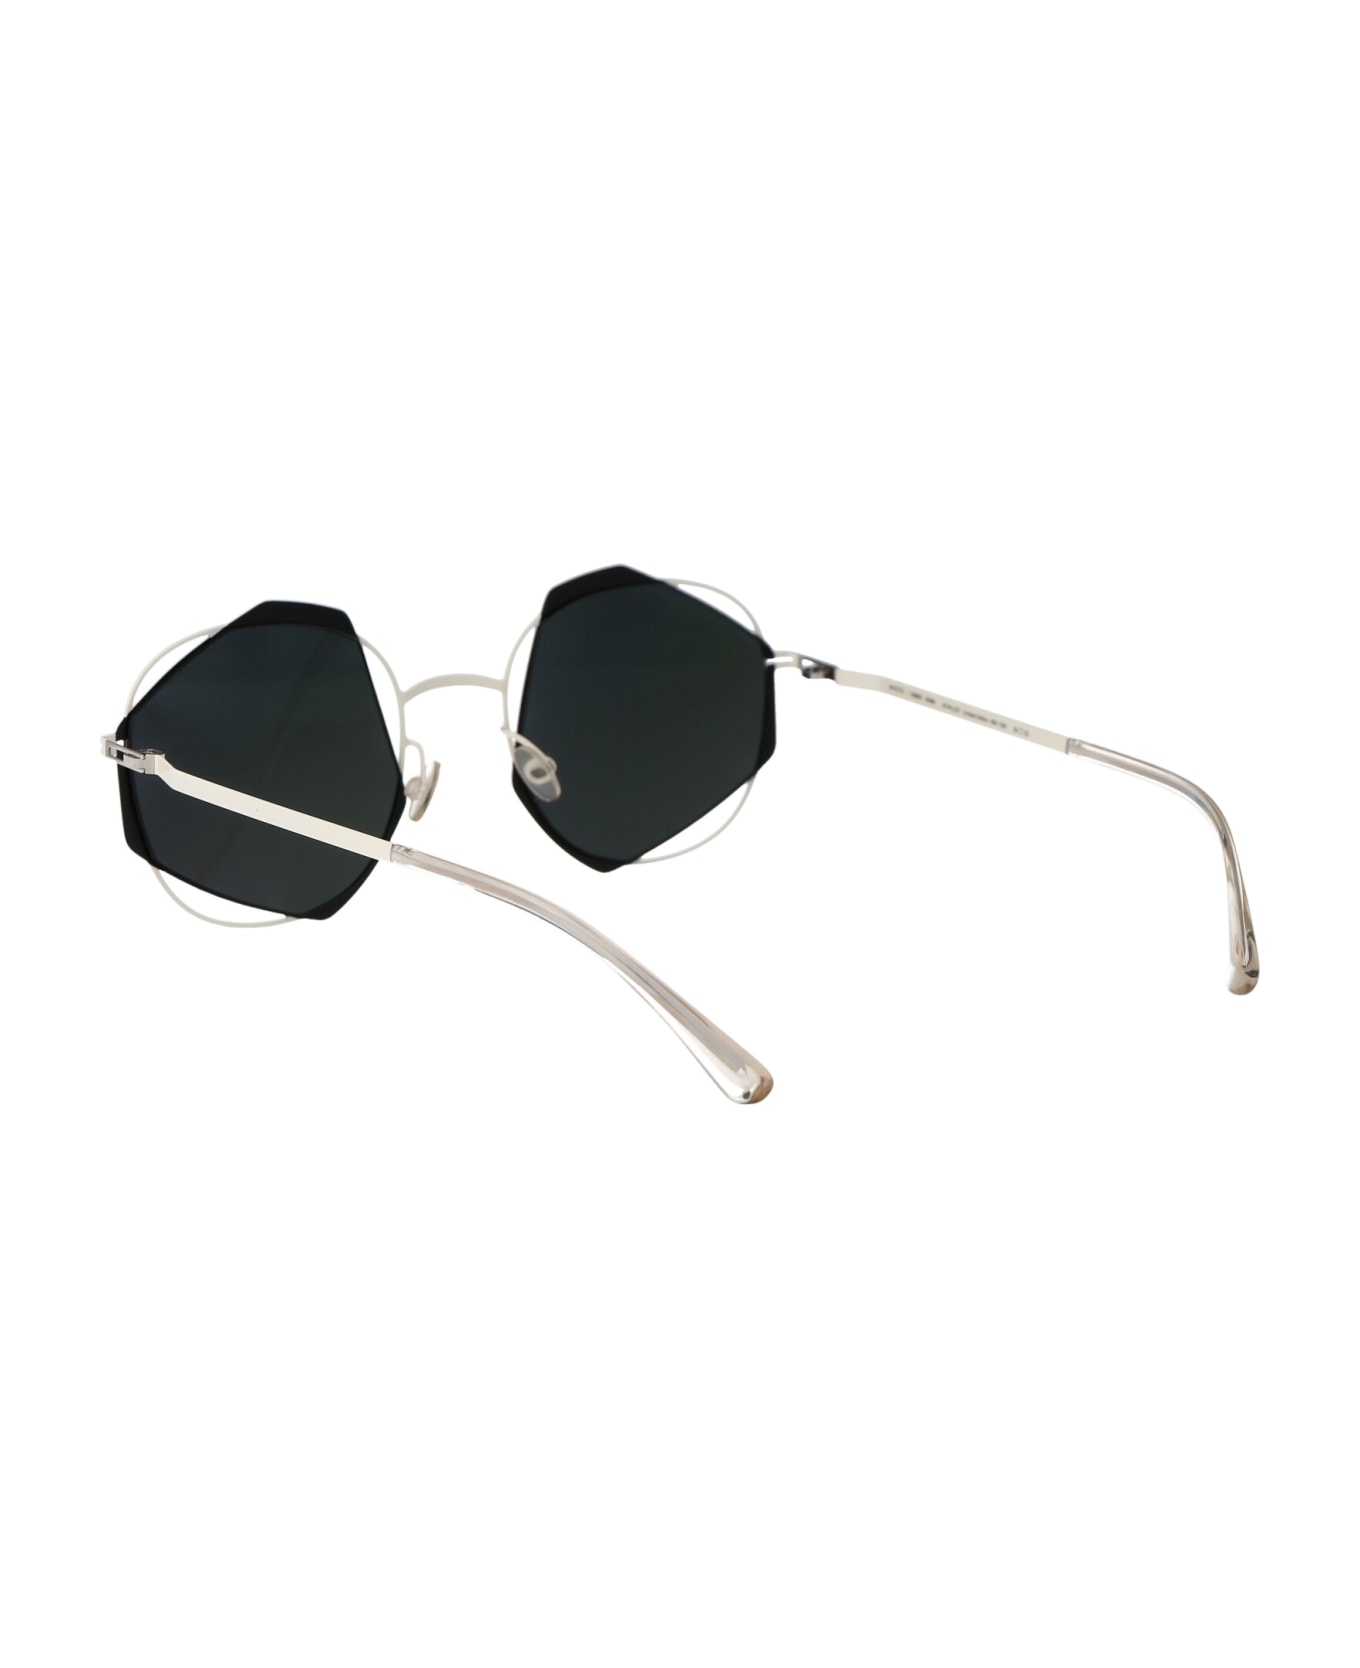 Mykita Achilles Sunglasses - 424 Antique White/Black Darkgrey Solid  サングラス